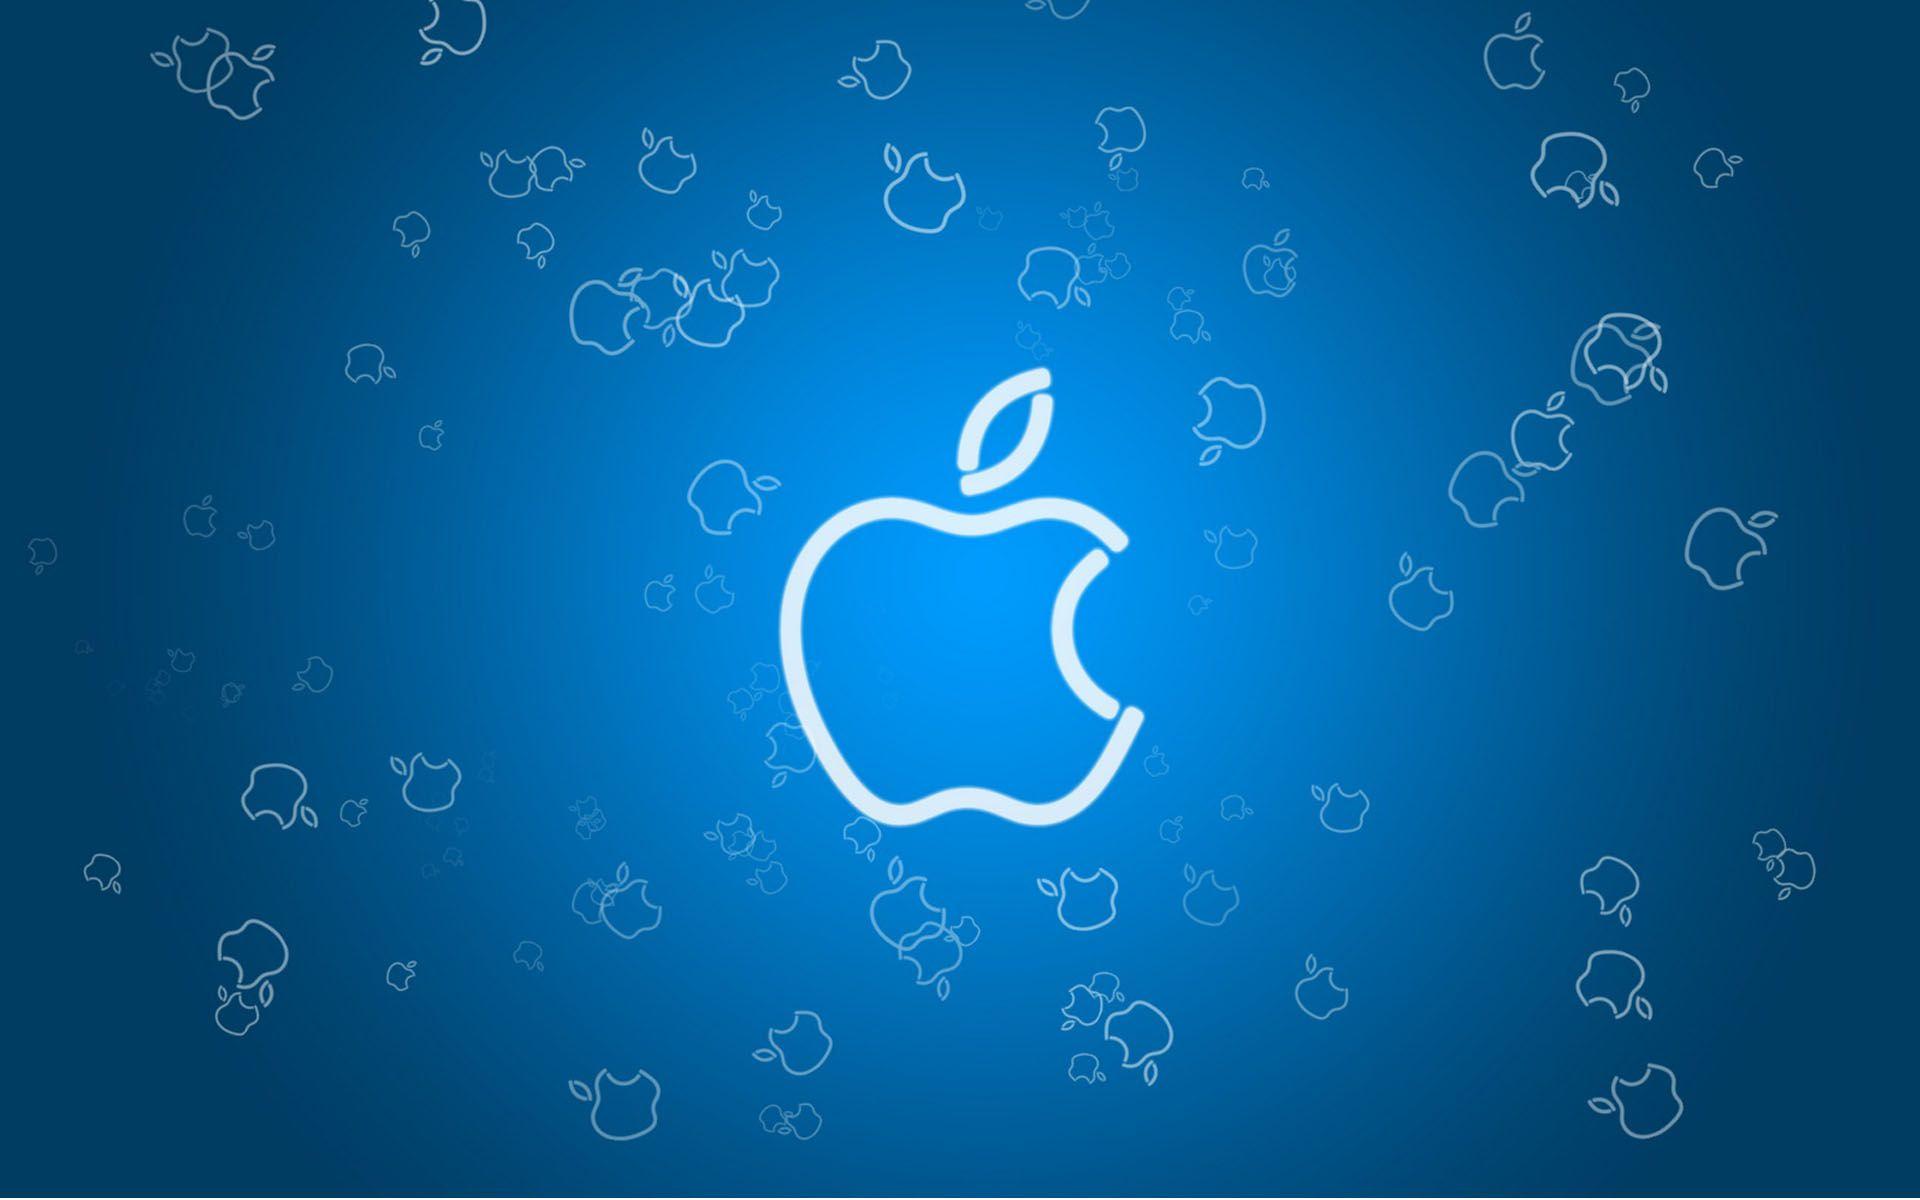 Red White Blue Apple Logo - Blue Apple Logo Wallpaper IPhone Wallpaper | WallpaperLepi